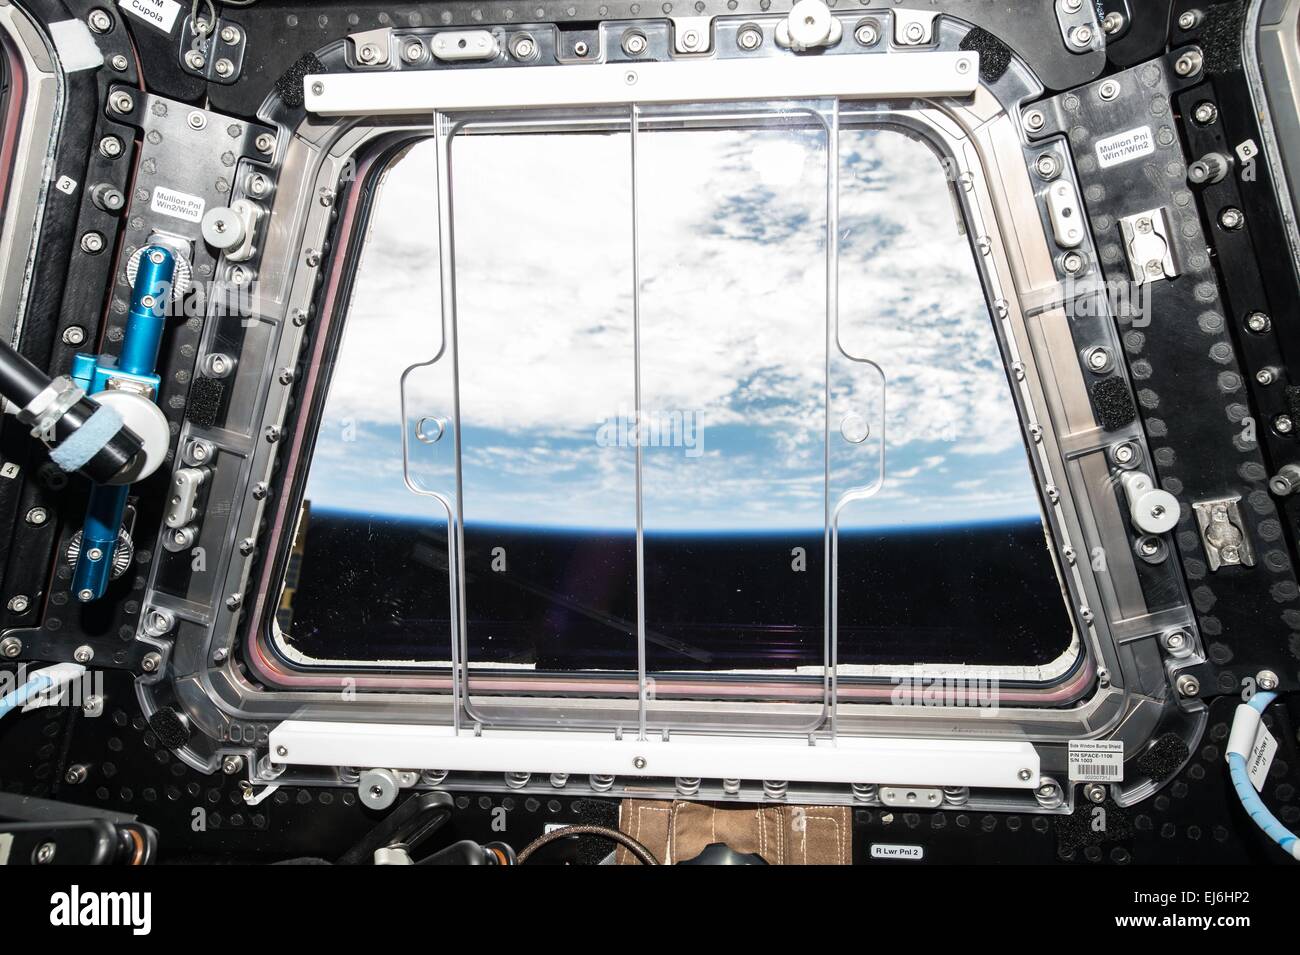 Vista dalla Stazione Spaziale Internazionale finestra Cupola della terra 8 febbraio 2015 in orbita intorno alla terra. La Cupola, una piccola cupola a forma di modulo ha sette windows -- sei attorno ai lati e uno sulla parte superiore -- che possono essere chiuse quando non è in utilizzo per proteggere la ISS dal le micrometeore e il duro ambiente spaziale. Le finestre sono fatte di silice fusa e vetro borosilicato riquadri, con rilevamento della temperatura e gli elementi riscaldatori della finestra. Essa è attaccata alla tranquillità il nodo 3 modulo, Cupola fornisce un hanno notevolmente migliorato la vista della stazione esterna. Foto Stock